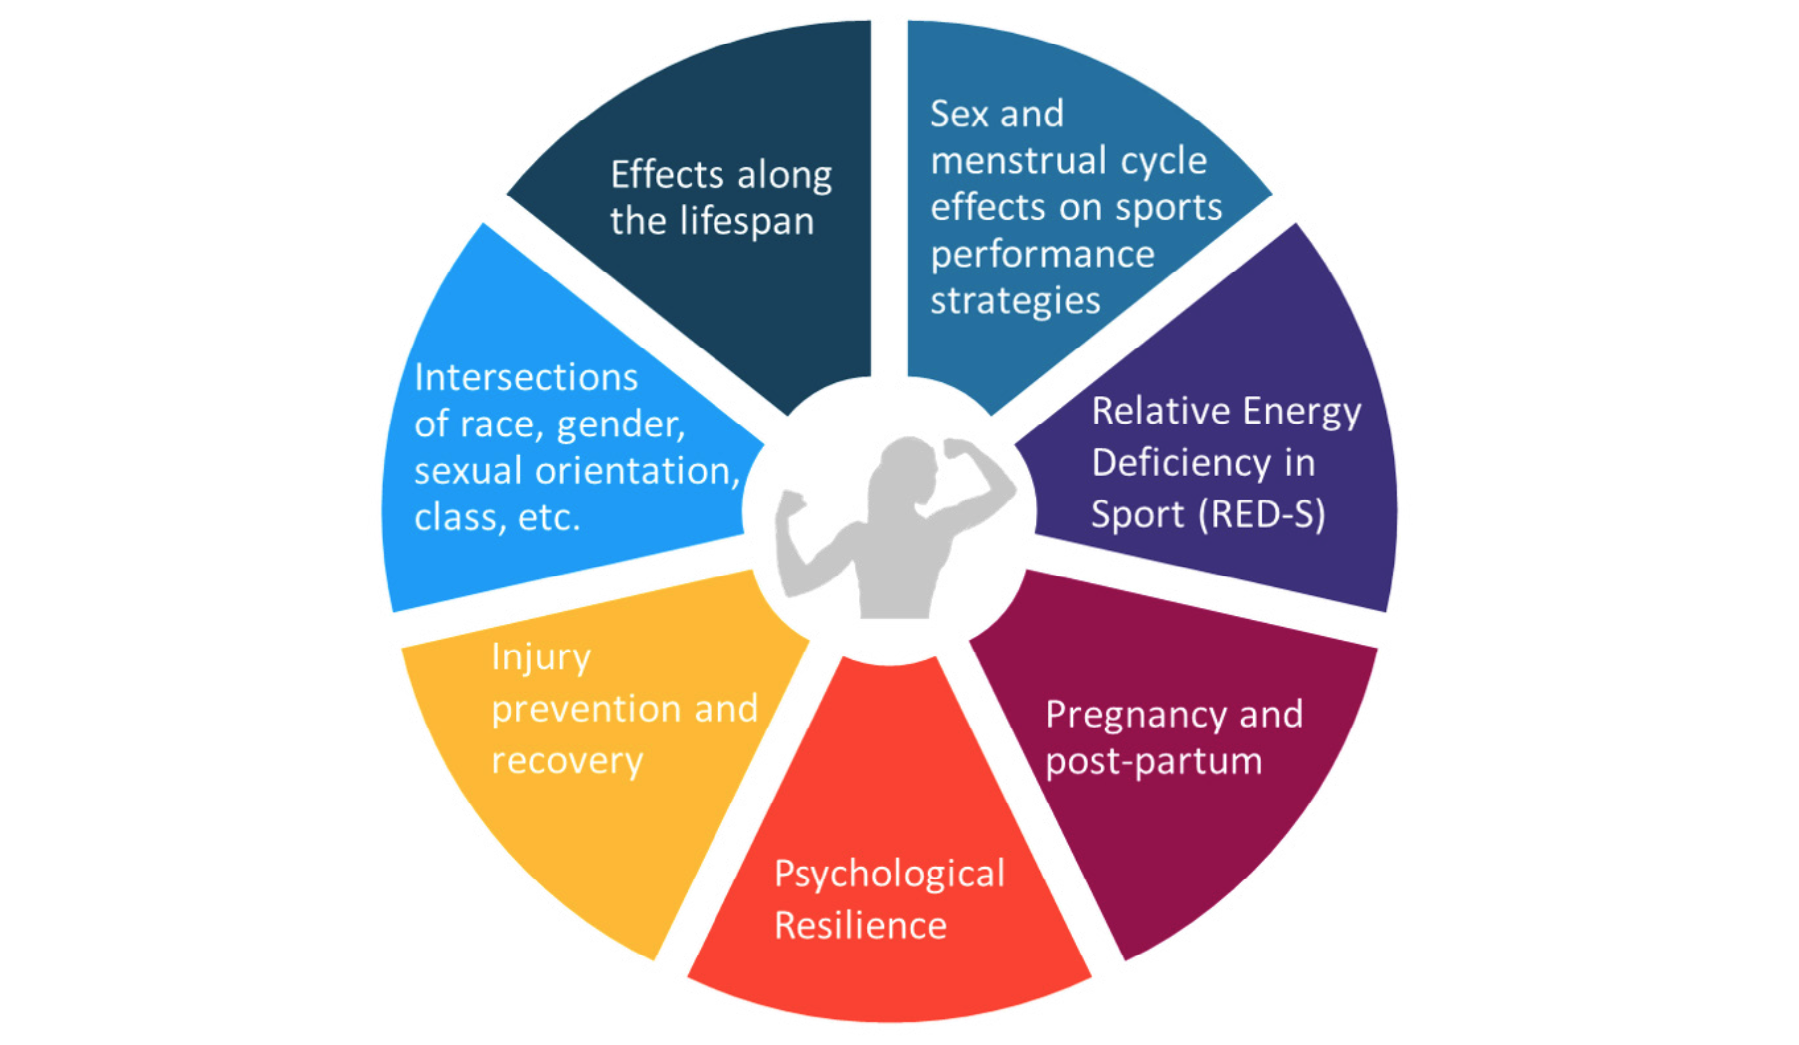 女运动员项目领域的研究、临床护理、教育和宣传